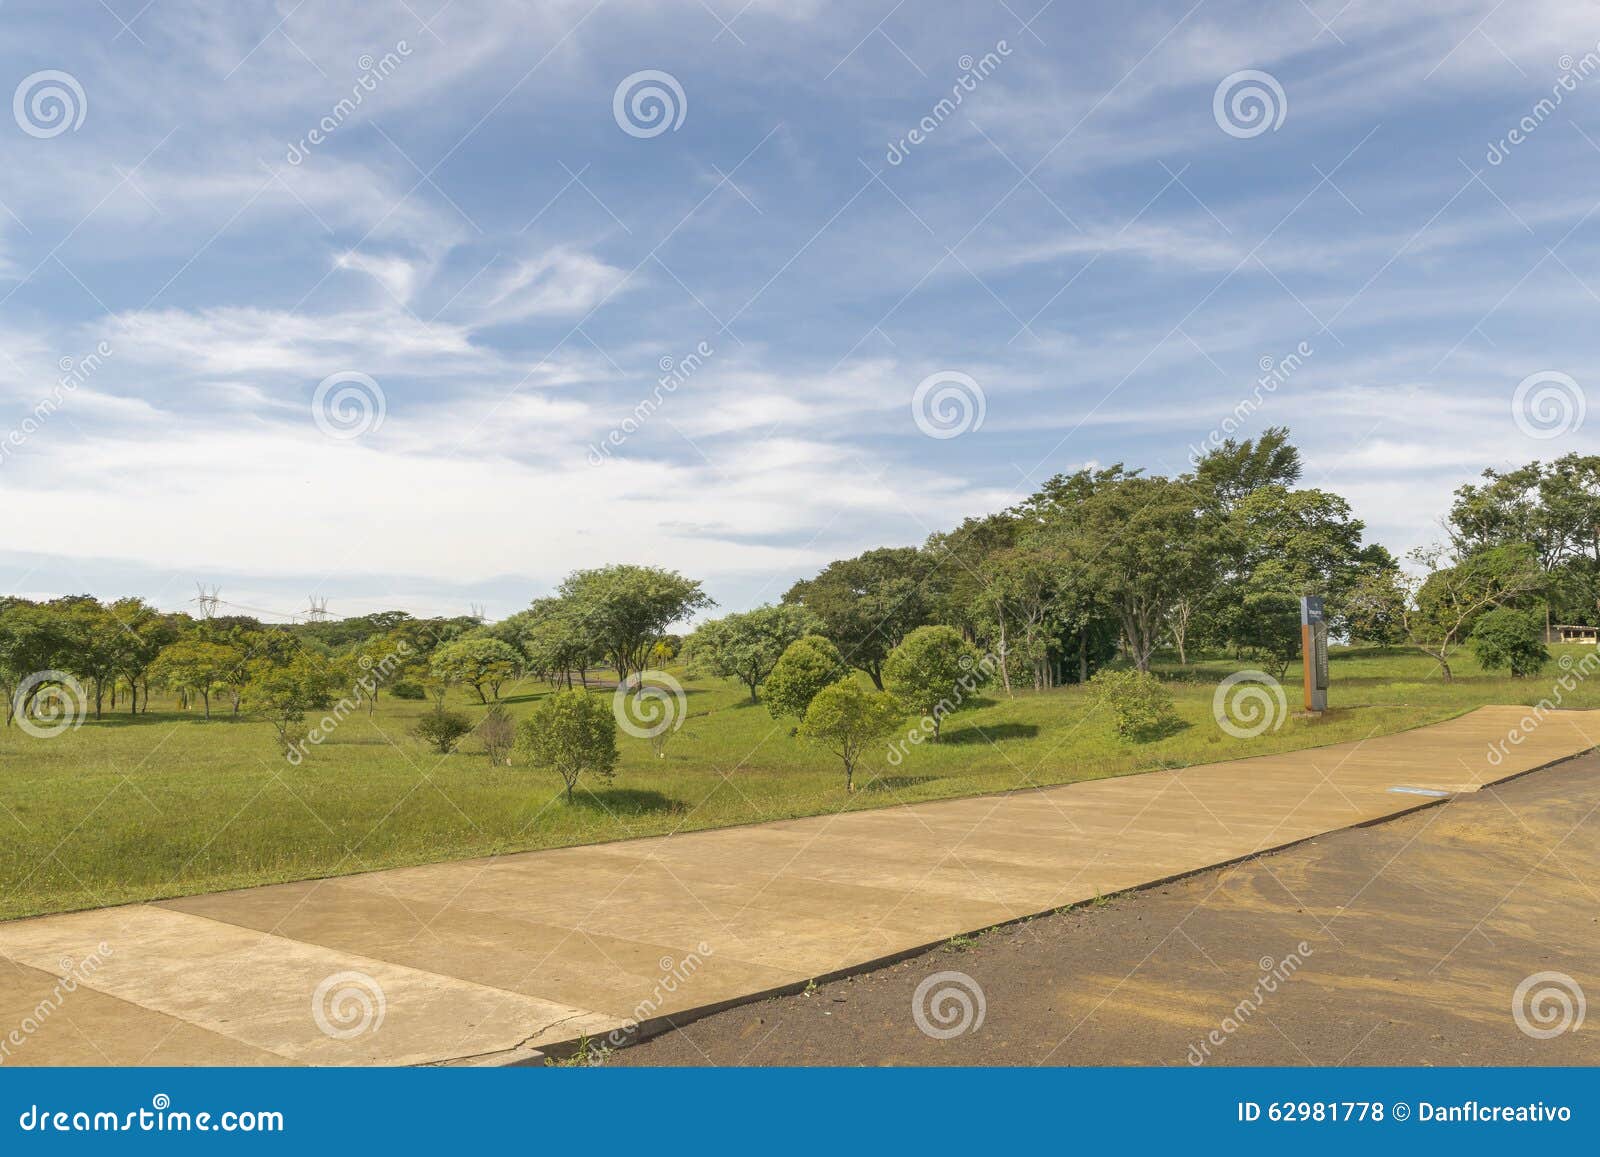 itaipu park at brazilian border